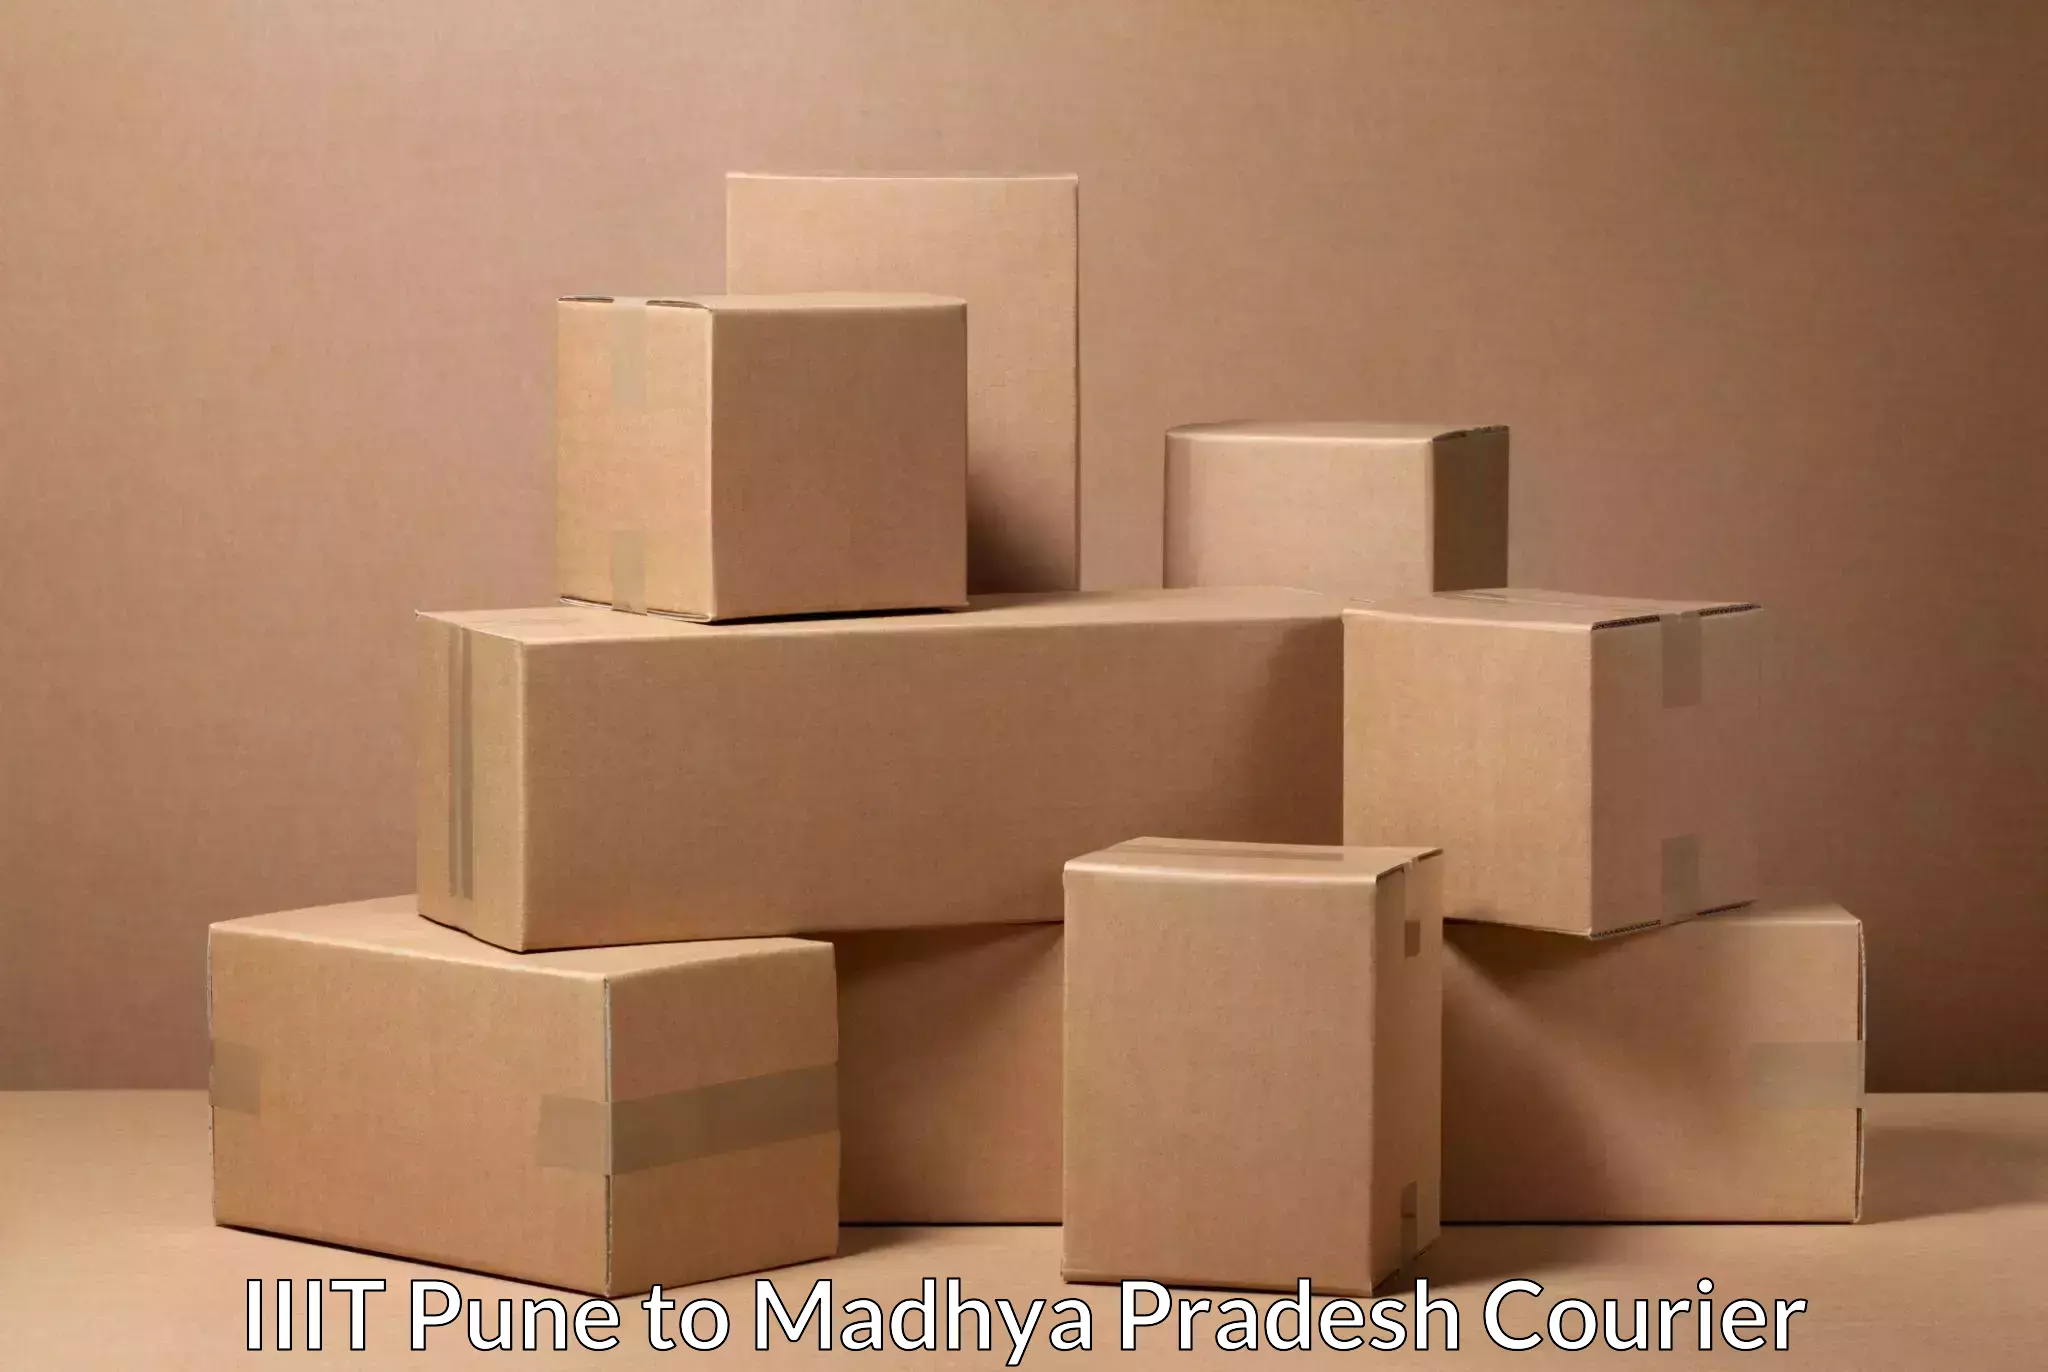 Online shipping calculator IIIT Pune to Madhya Pradesh